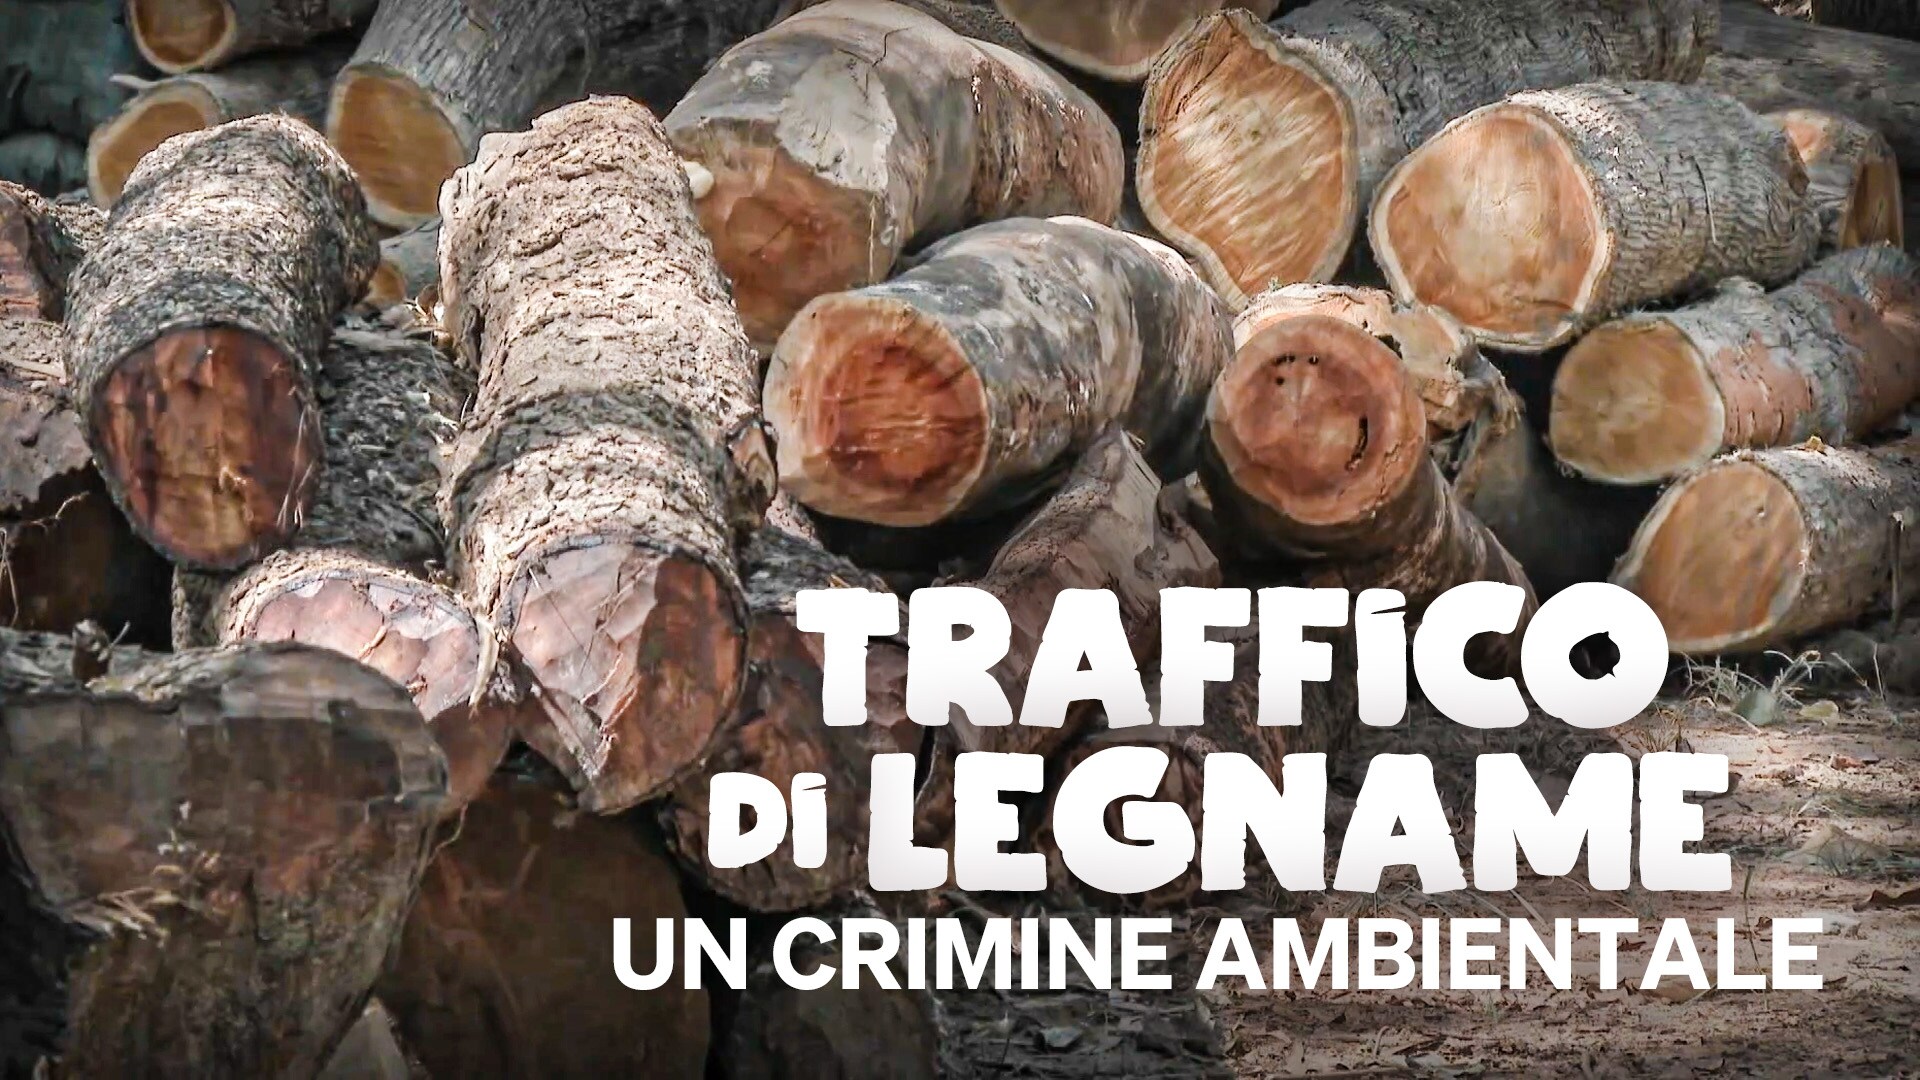 Traffico di legname, un crimine ambientale